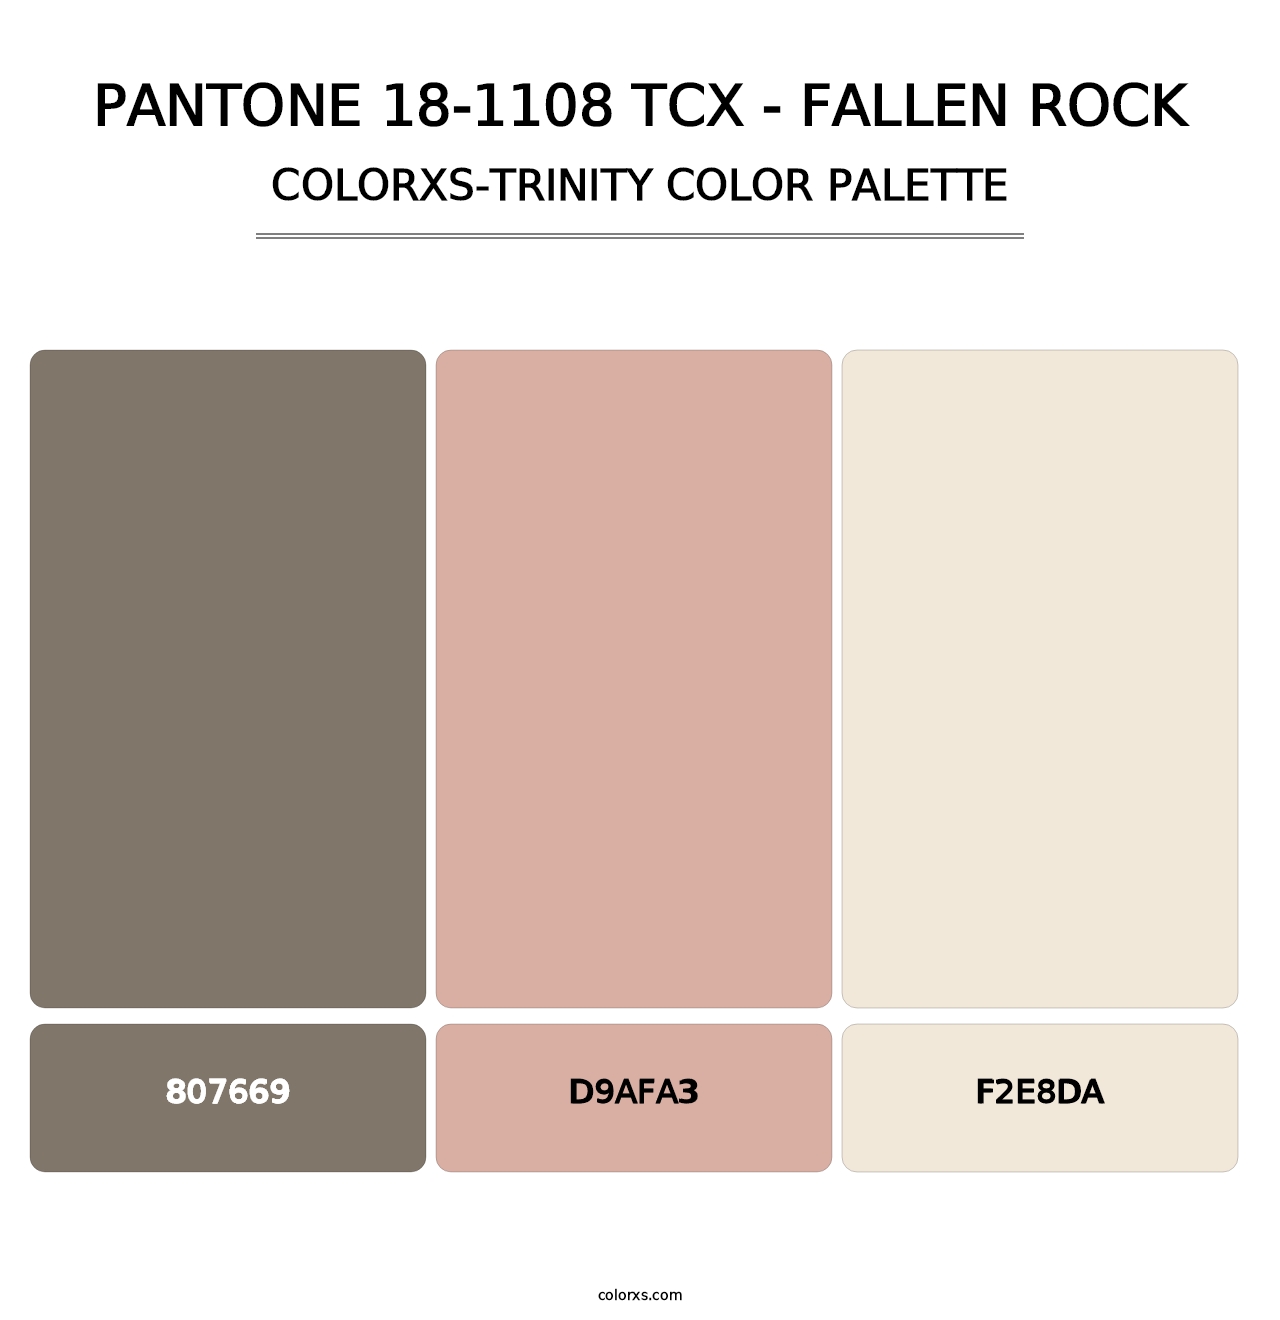 PANTONE 18-1108 TCX - Fallen Rock - Colorxs Trinity Palette